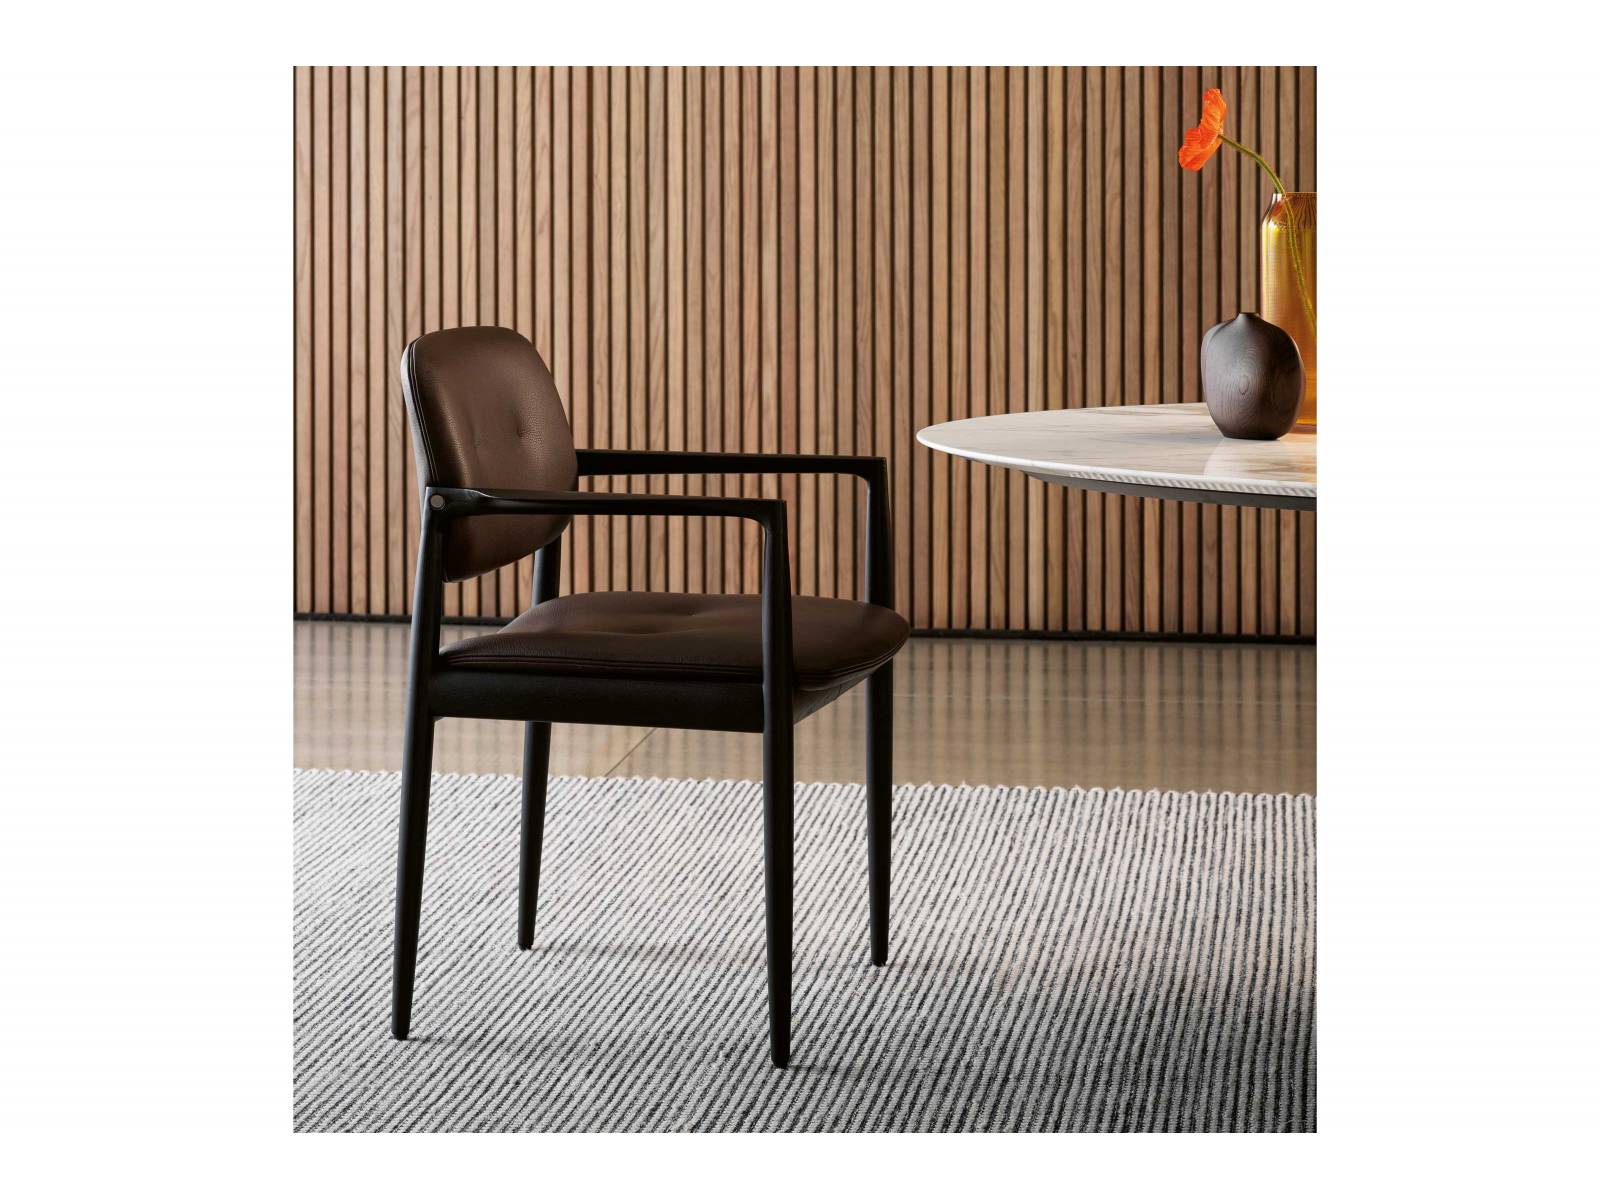 Der japanische Name, die skandinavische Formensprache und das italienische Handwerk machen aus dem Dining Chair «Yoko» ein Möbelstück, das alle drei Kulturen in sich vereint. Design: Inoda + Sveje. MINOTTI.